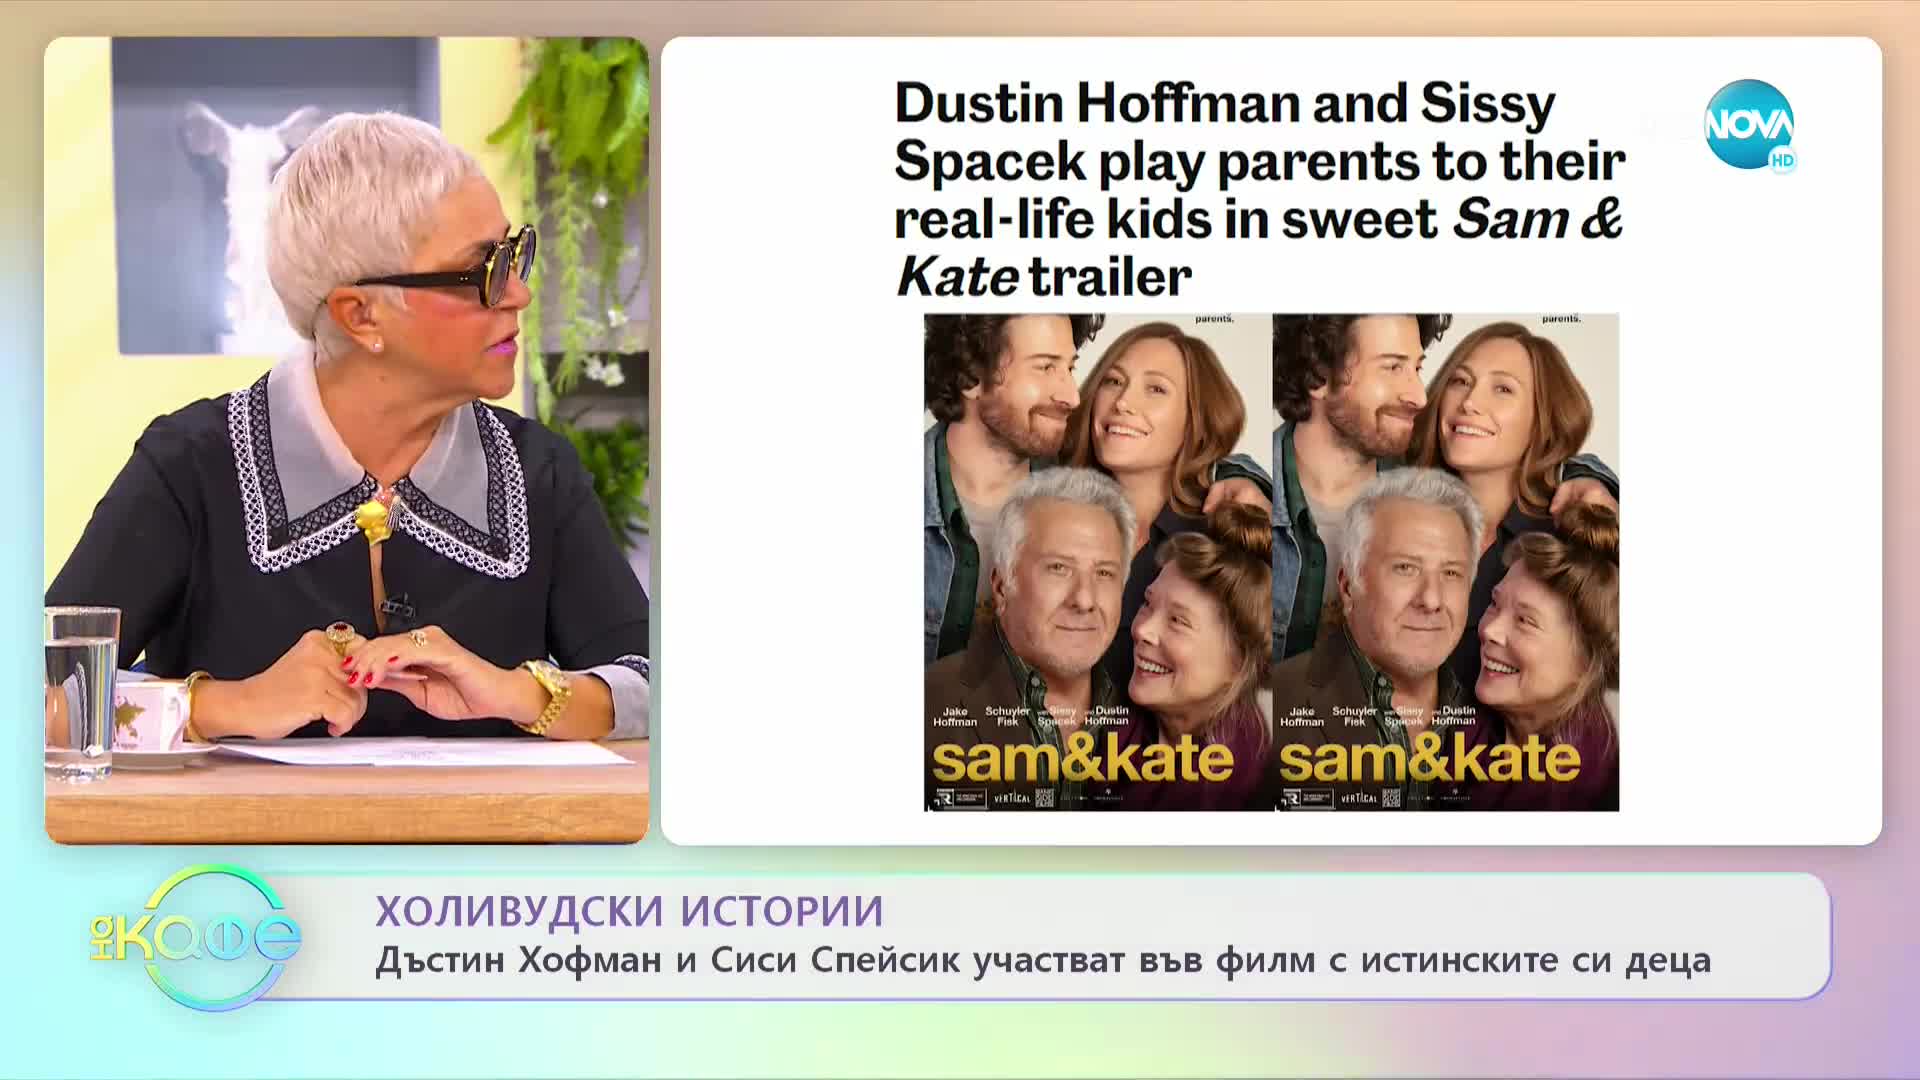 Дъстин Хофман и Сиси Спейсик участват във филм с истинските си деца